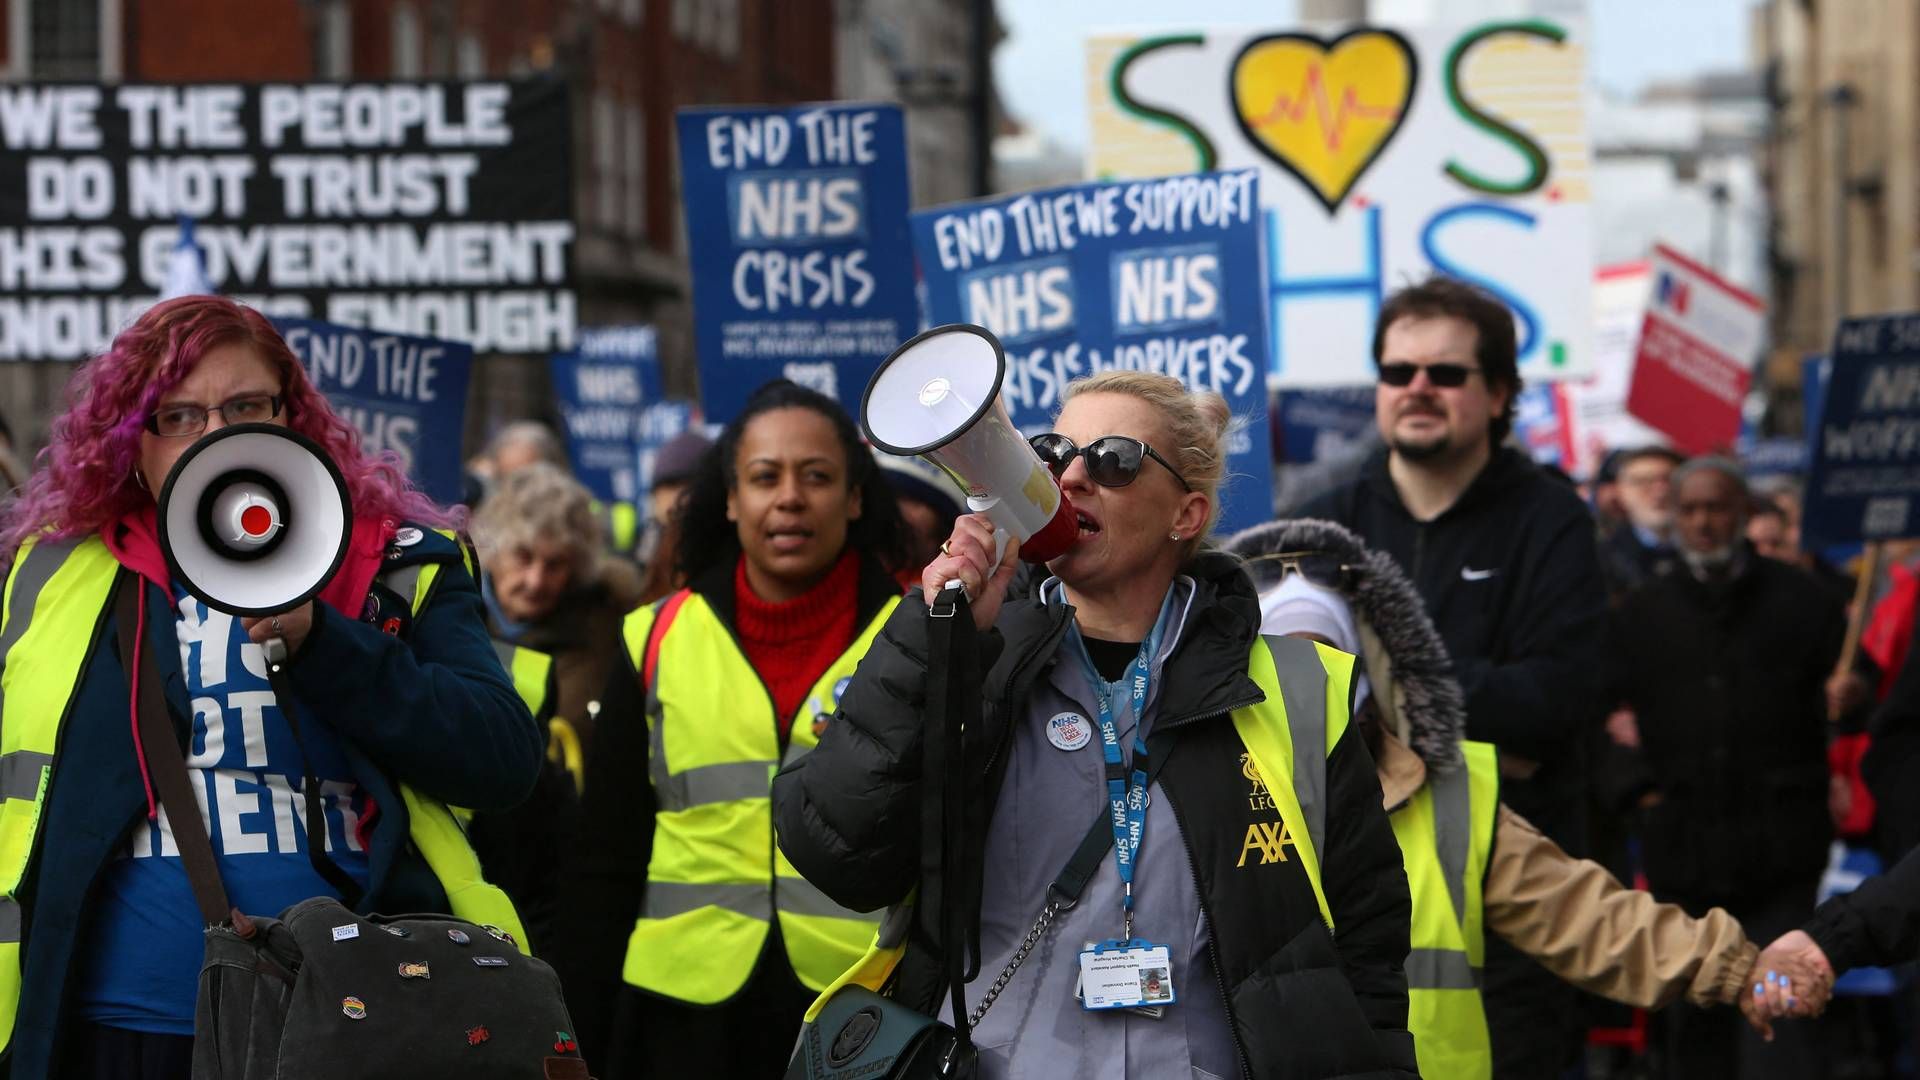 Storbritannien har været ramt af omfattende strejker de seneste måneder | Foto: Susannah Ireland